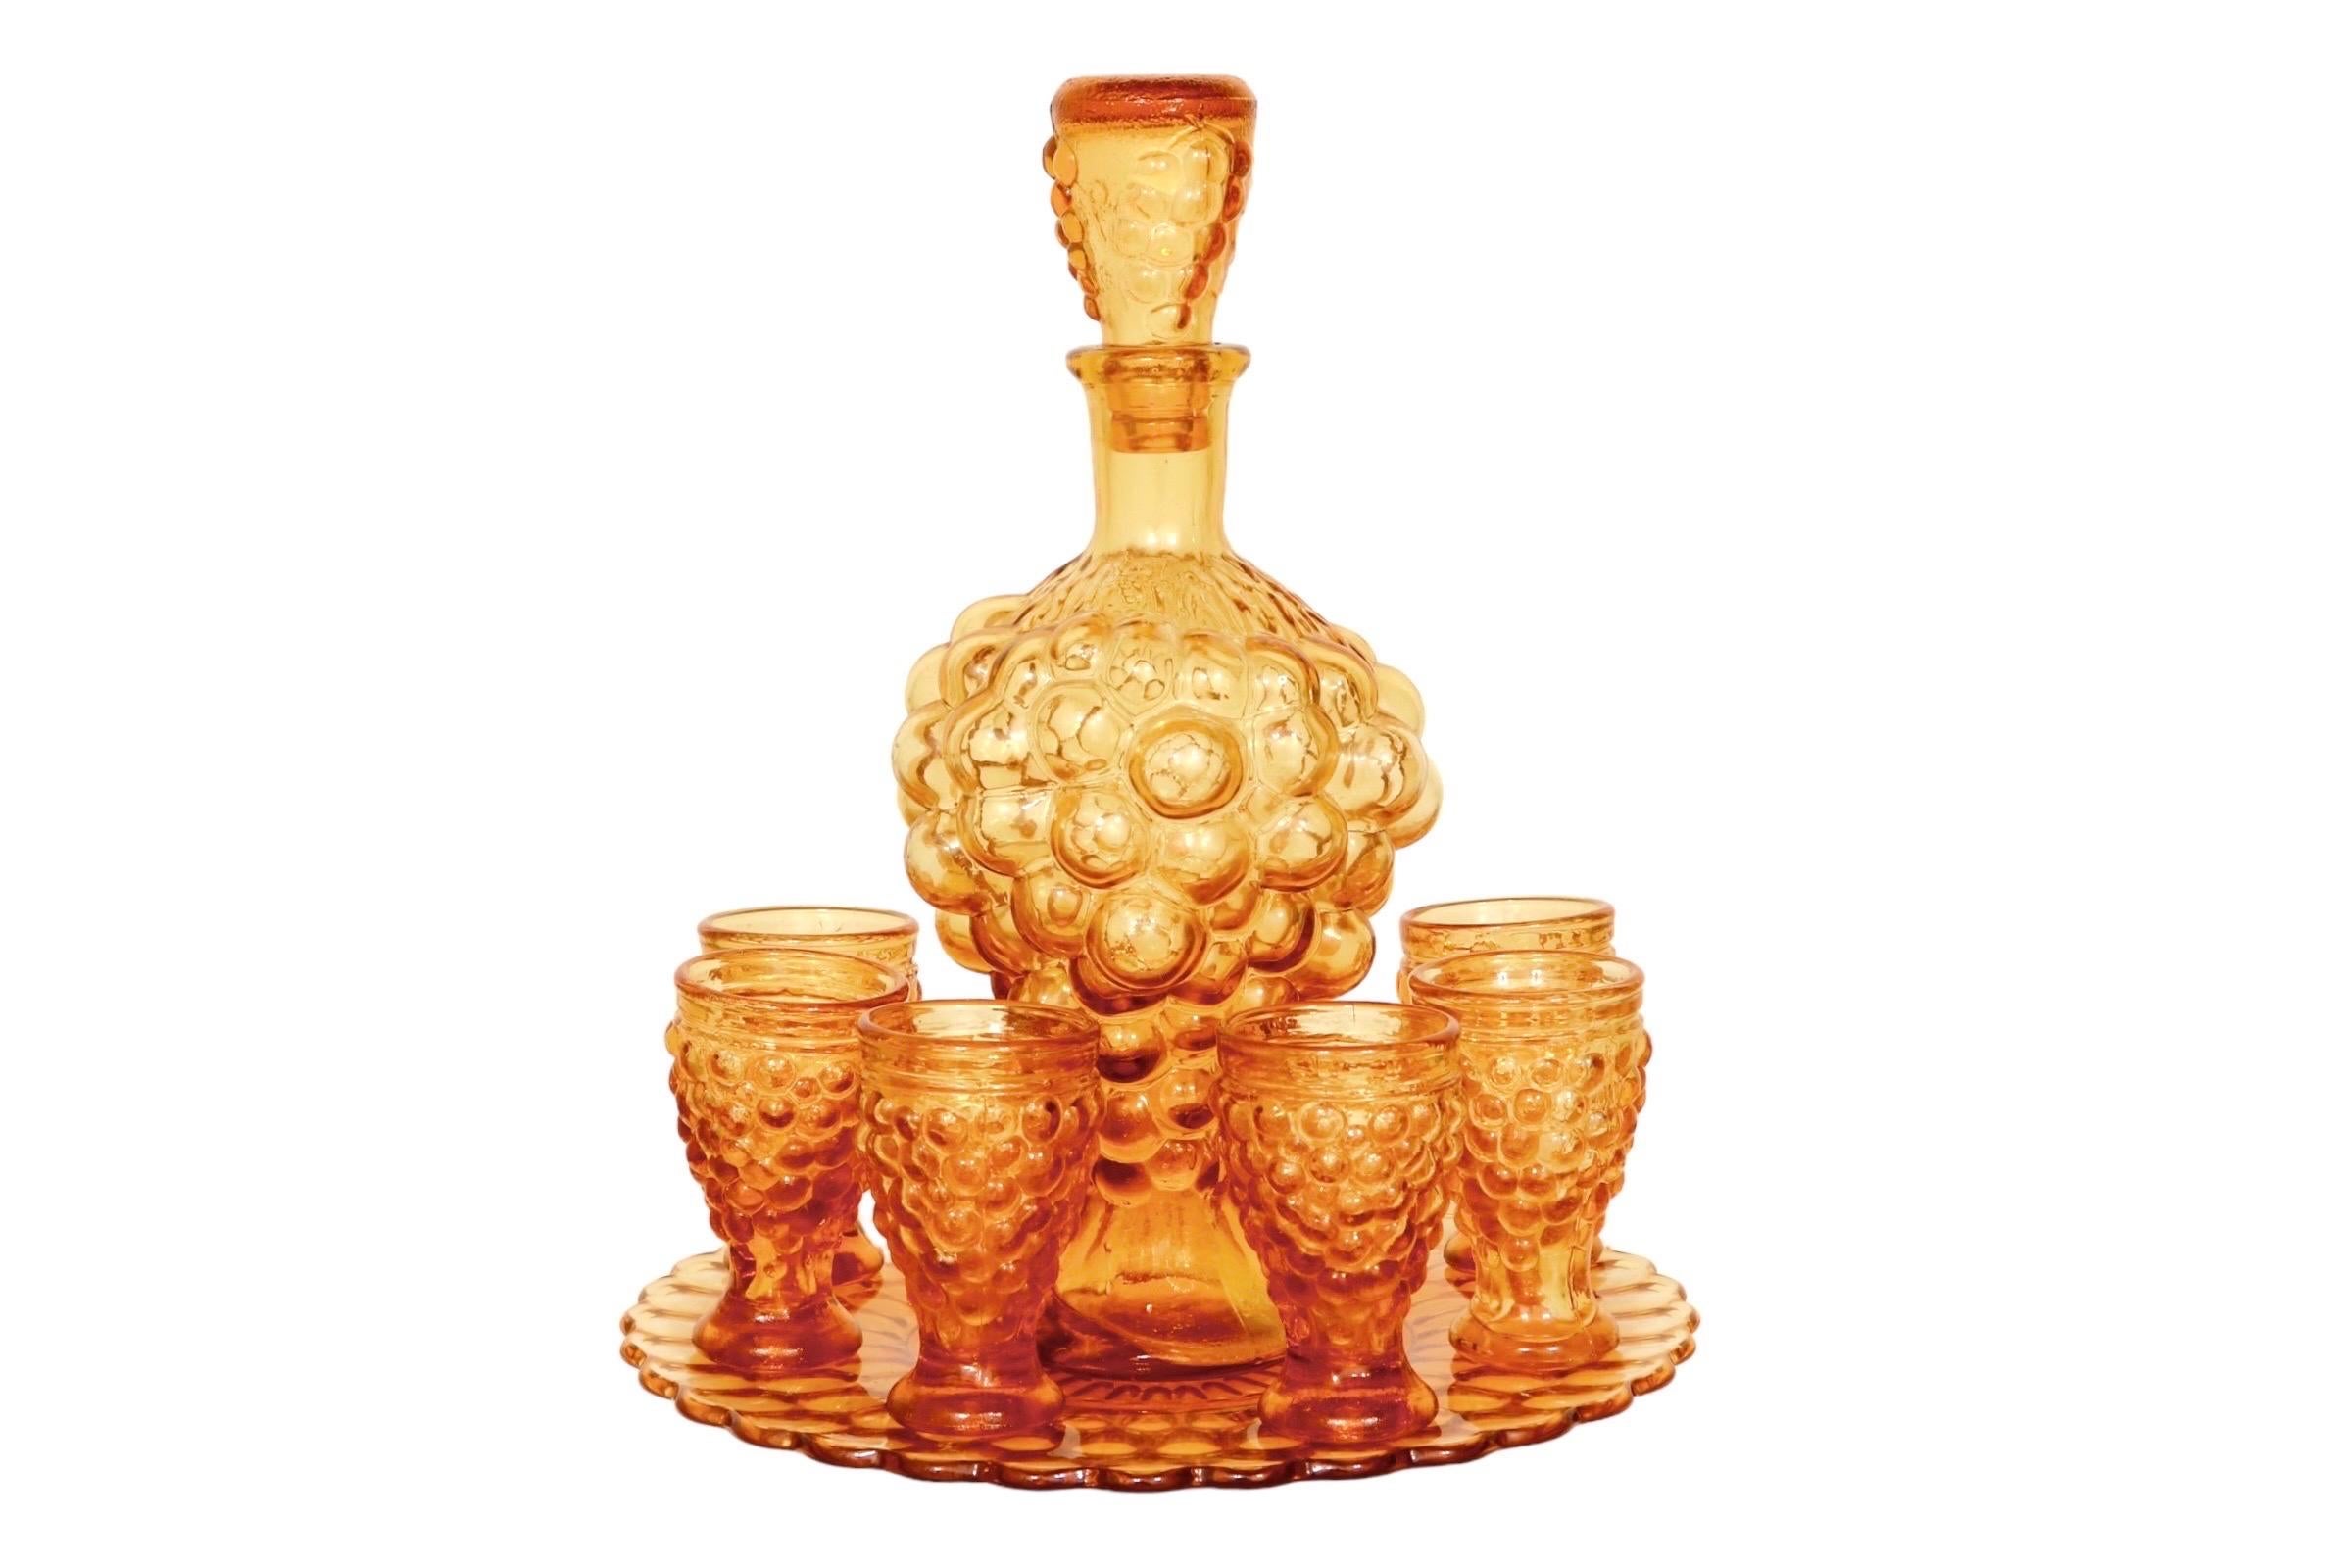 Carafe à décanter italienne en verre ambré avec six verres et une assiette de service. La carafe est pressée dans une grappe de raisin en forme de bulle. Le motif de la bulle est répété sur le bouchon de la carafe, sur six verres et sur le dessous